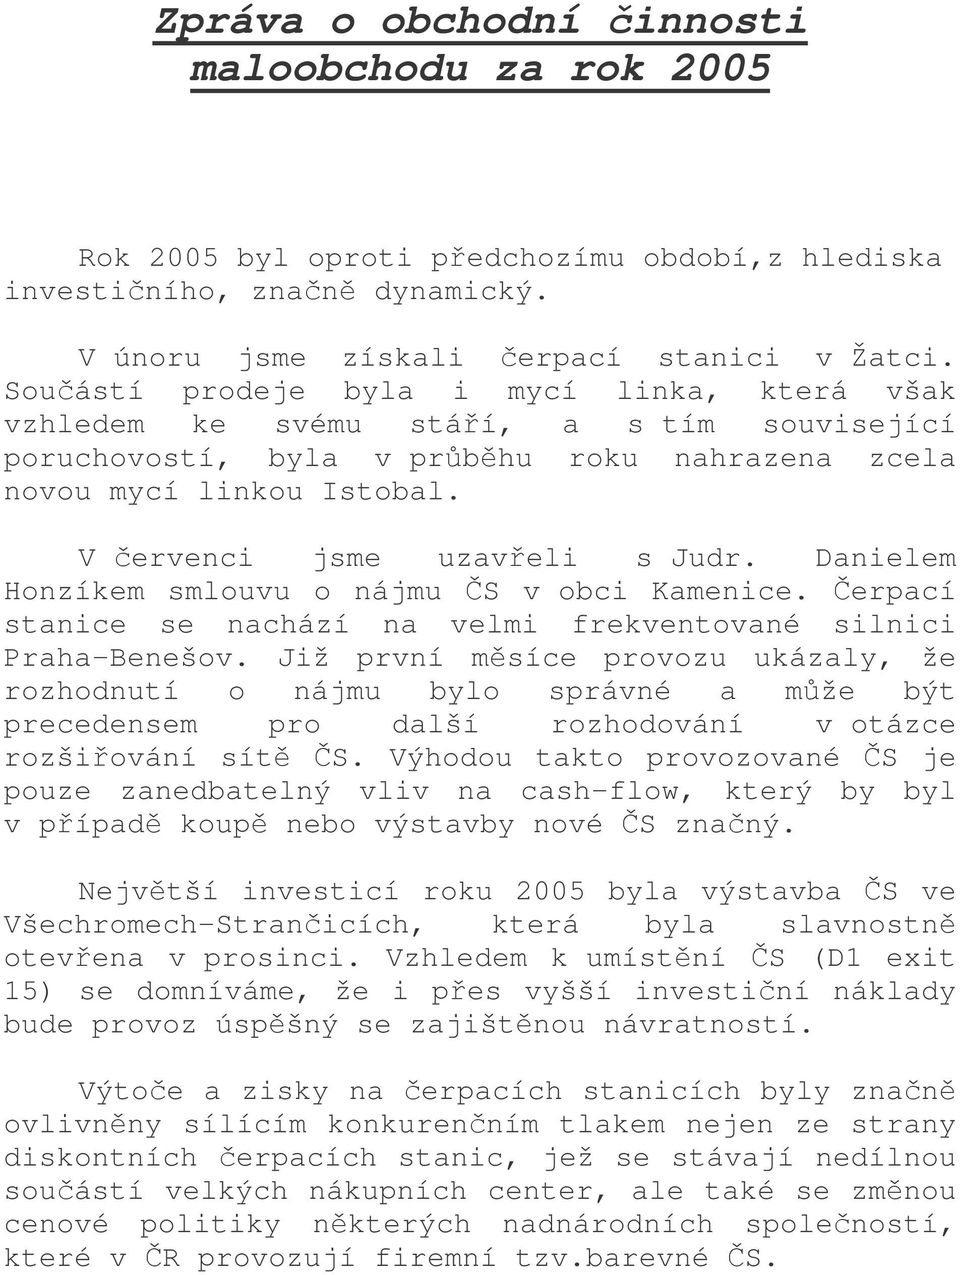 Danielem Honzíkem smlouvu o nájmu S v obci Kamenice. erpací stanice se nachází na velmi frekventované silnici Praha-Benešov.